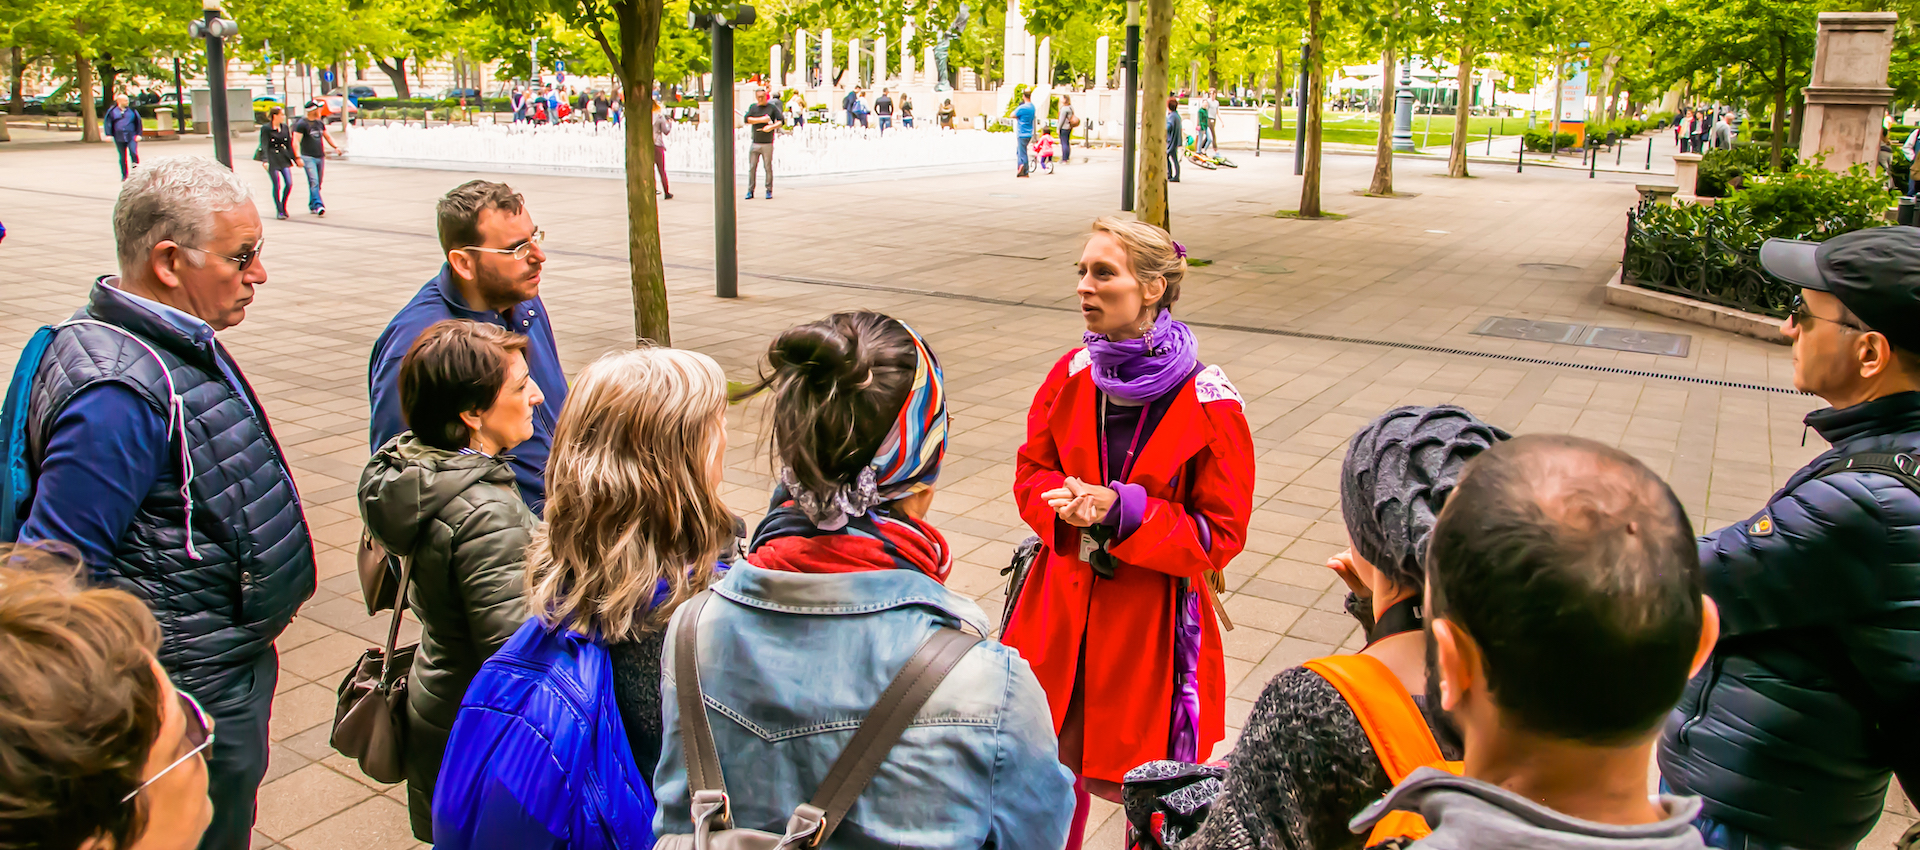 Eine Frau steht vor einer gemischten Gruppe Personen in einer Fußgängerzone und erklärt etwas.